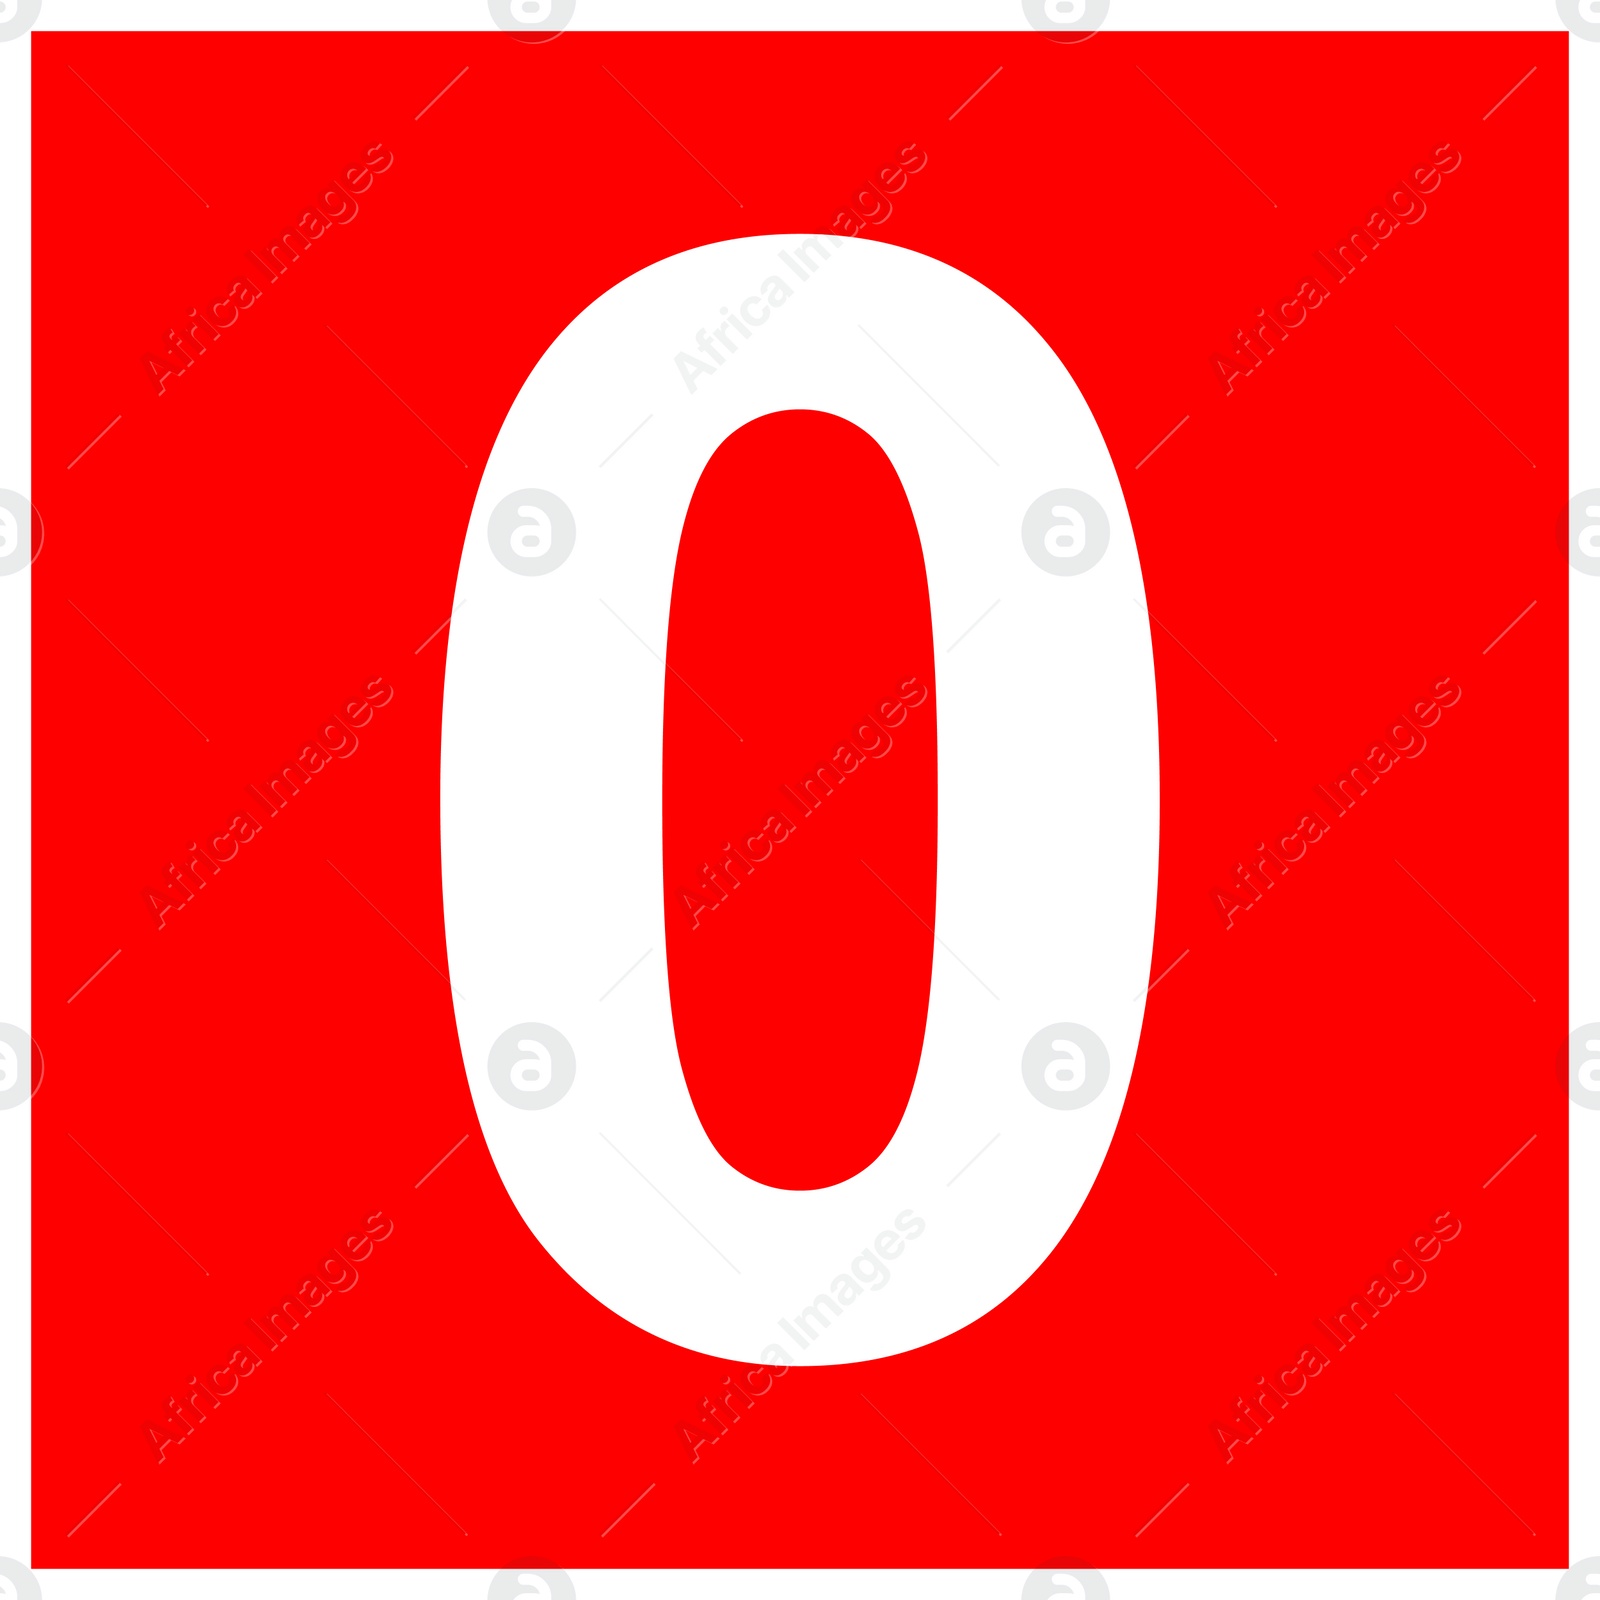 Image of International Maritime Organization (IMO) sign, illustration. Number "0" 